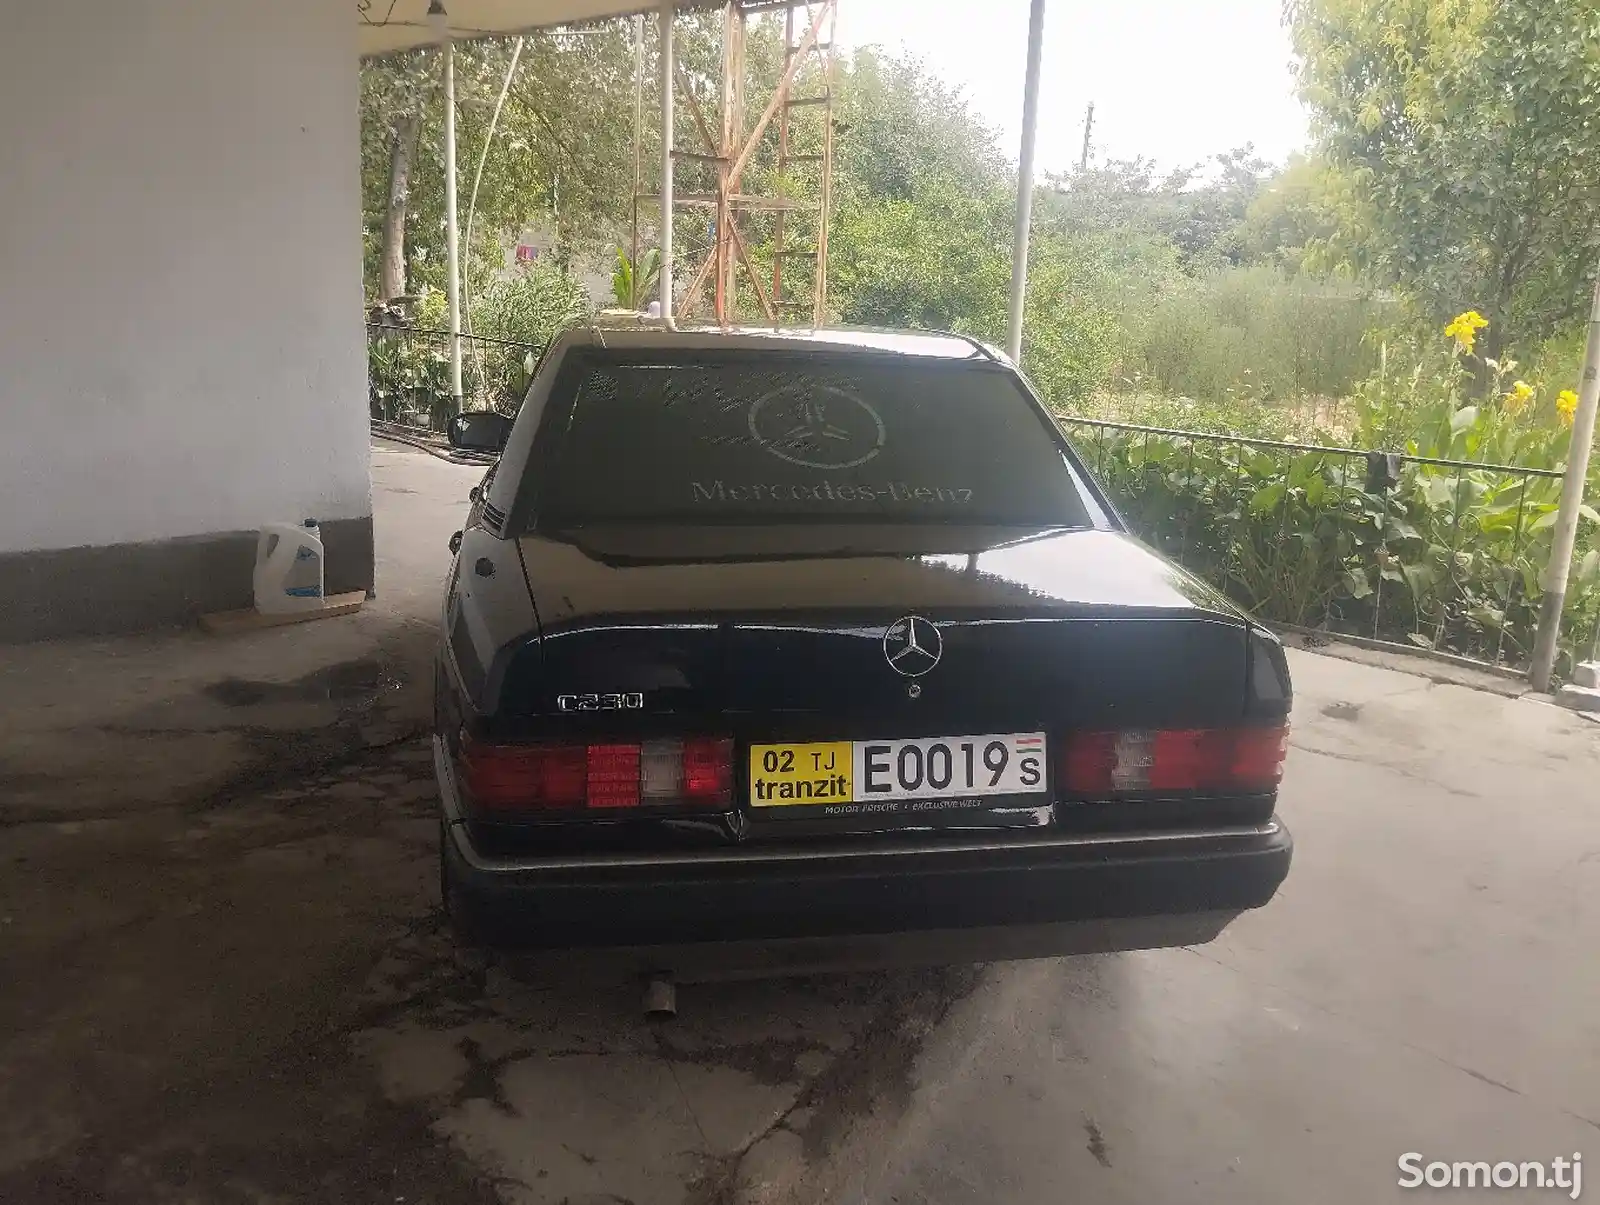 Mercedes-Benz W201, 1991-2